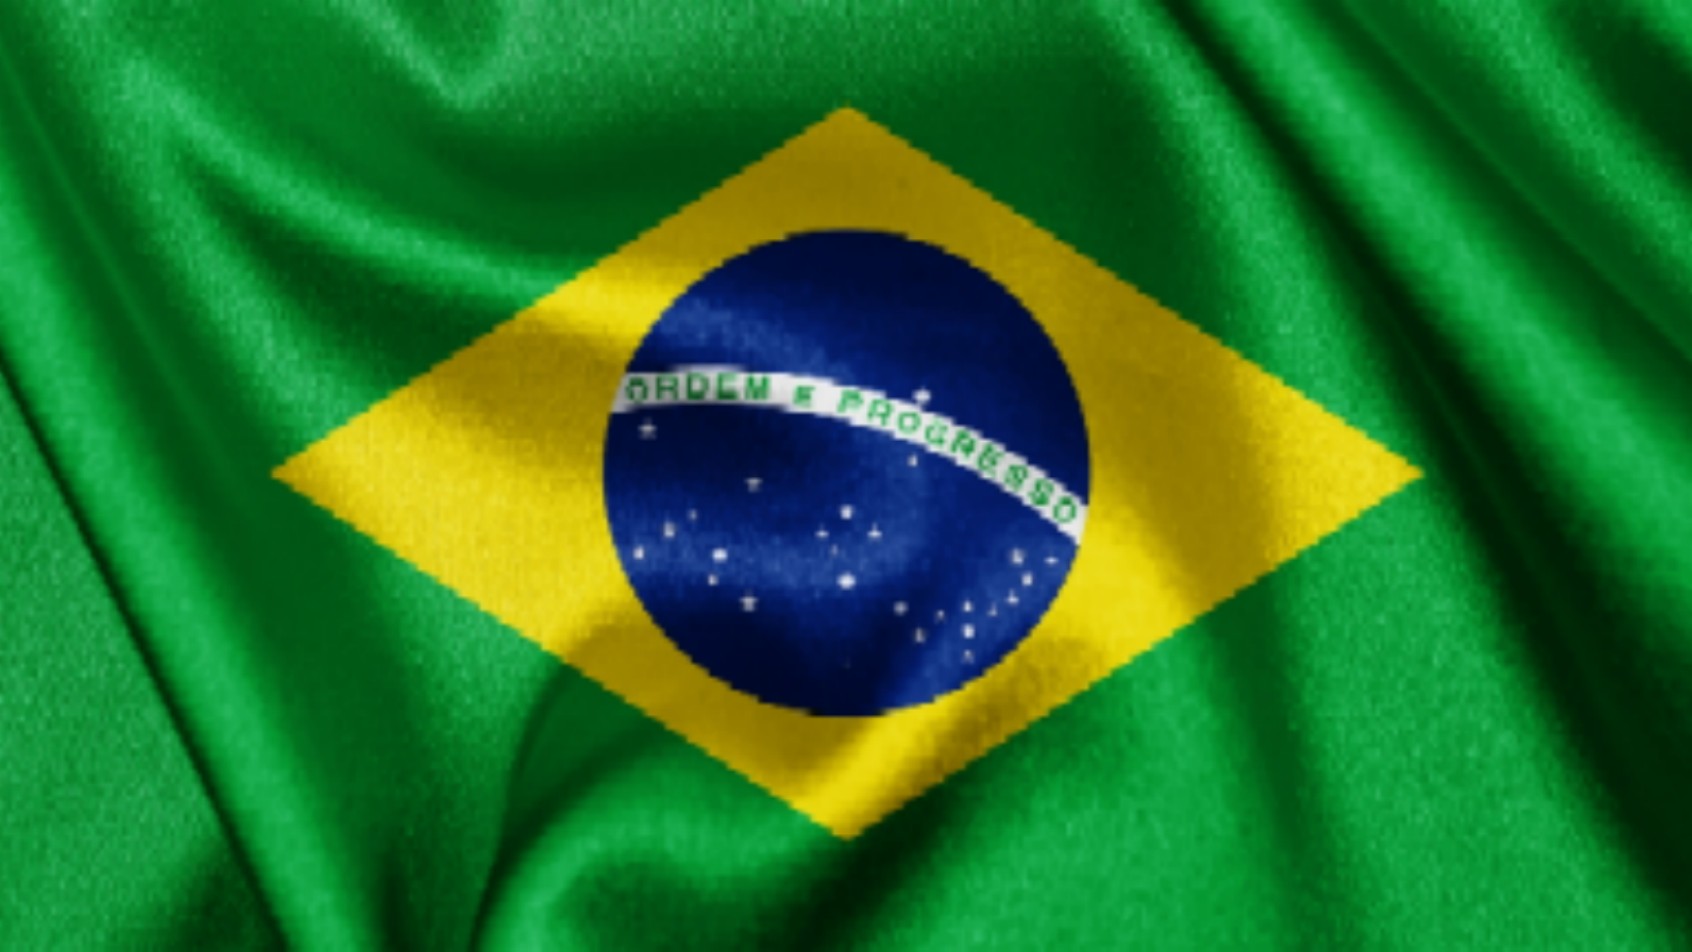 bandeira_brazil